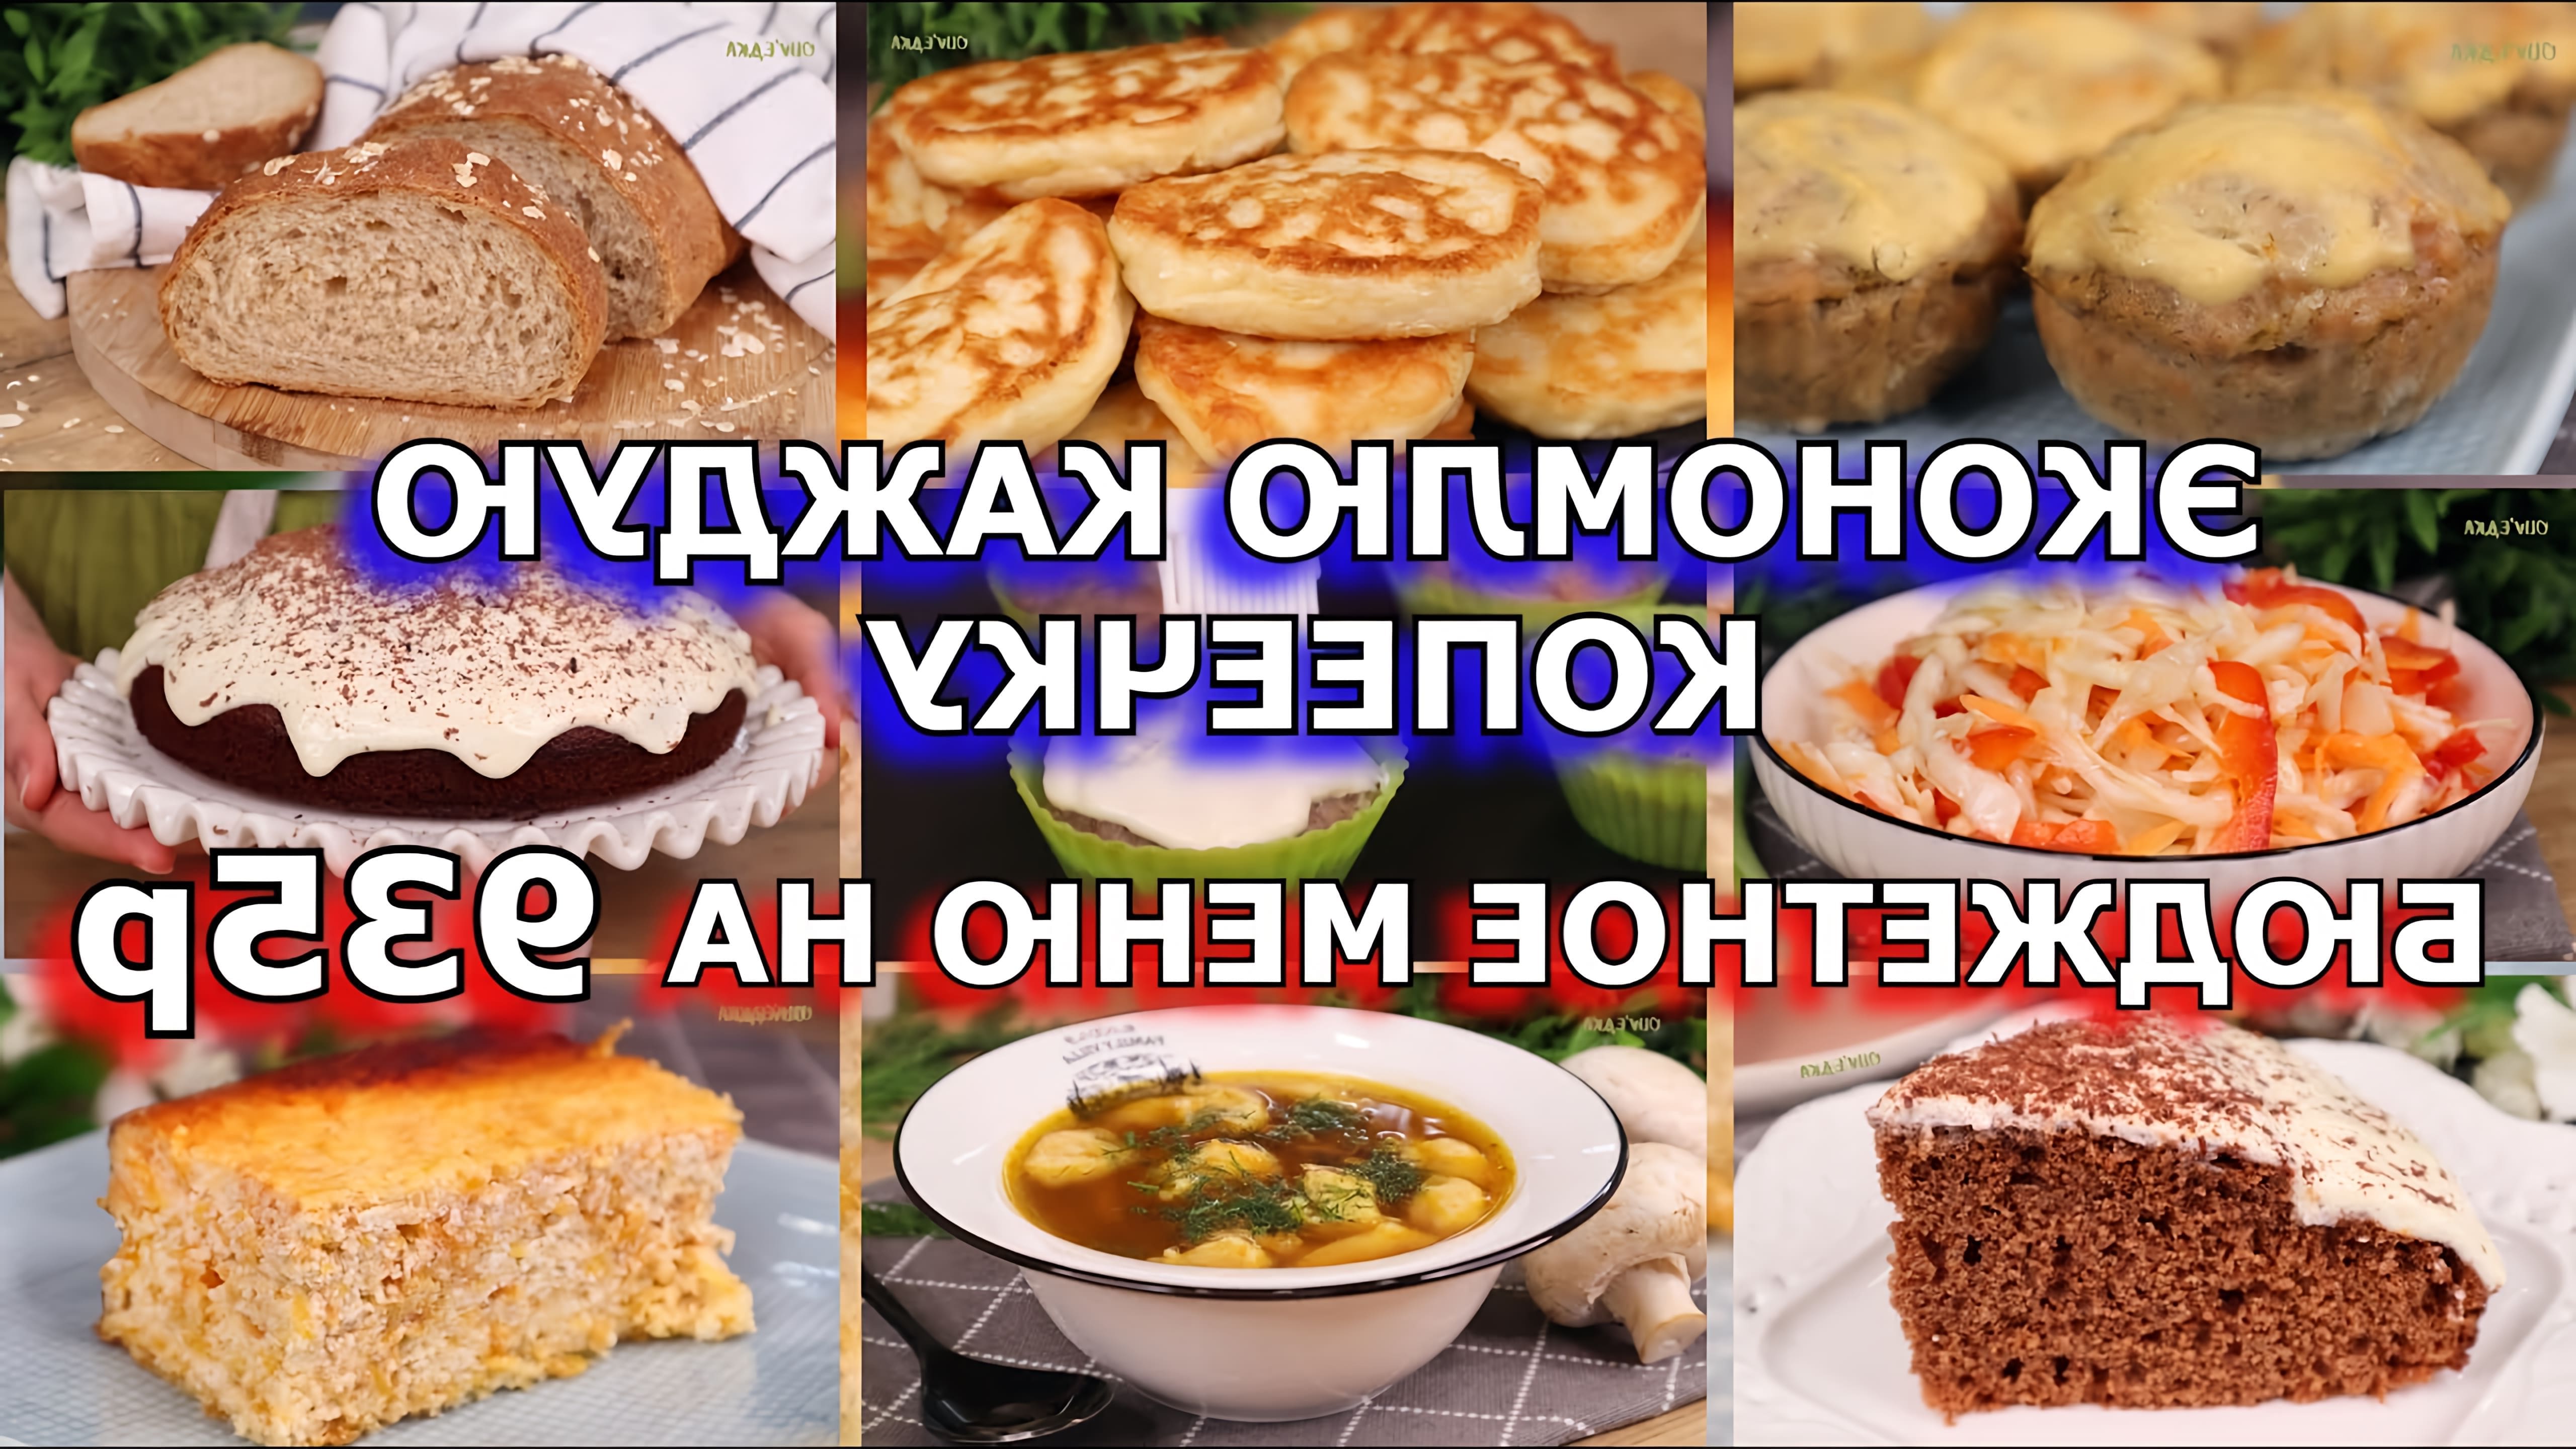 В этом видео представлен бюджетный рацион на 935 рублей, включающий в себя завтрак, обед, ужин, закуску и десерт